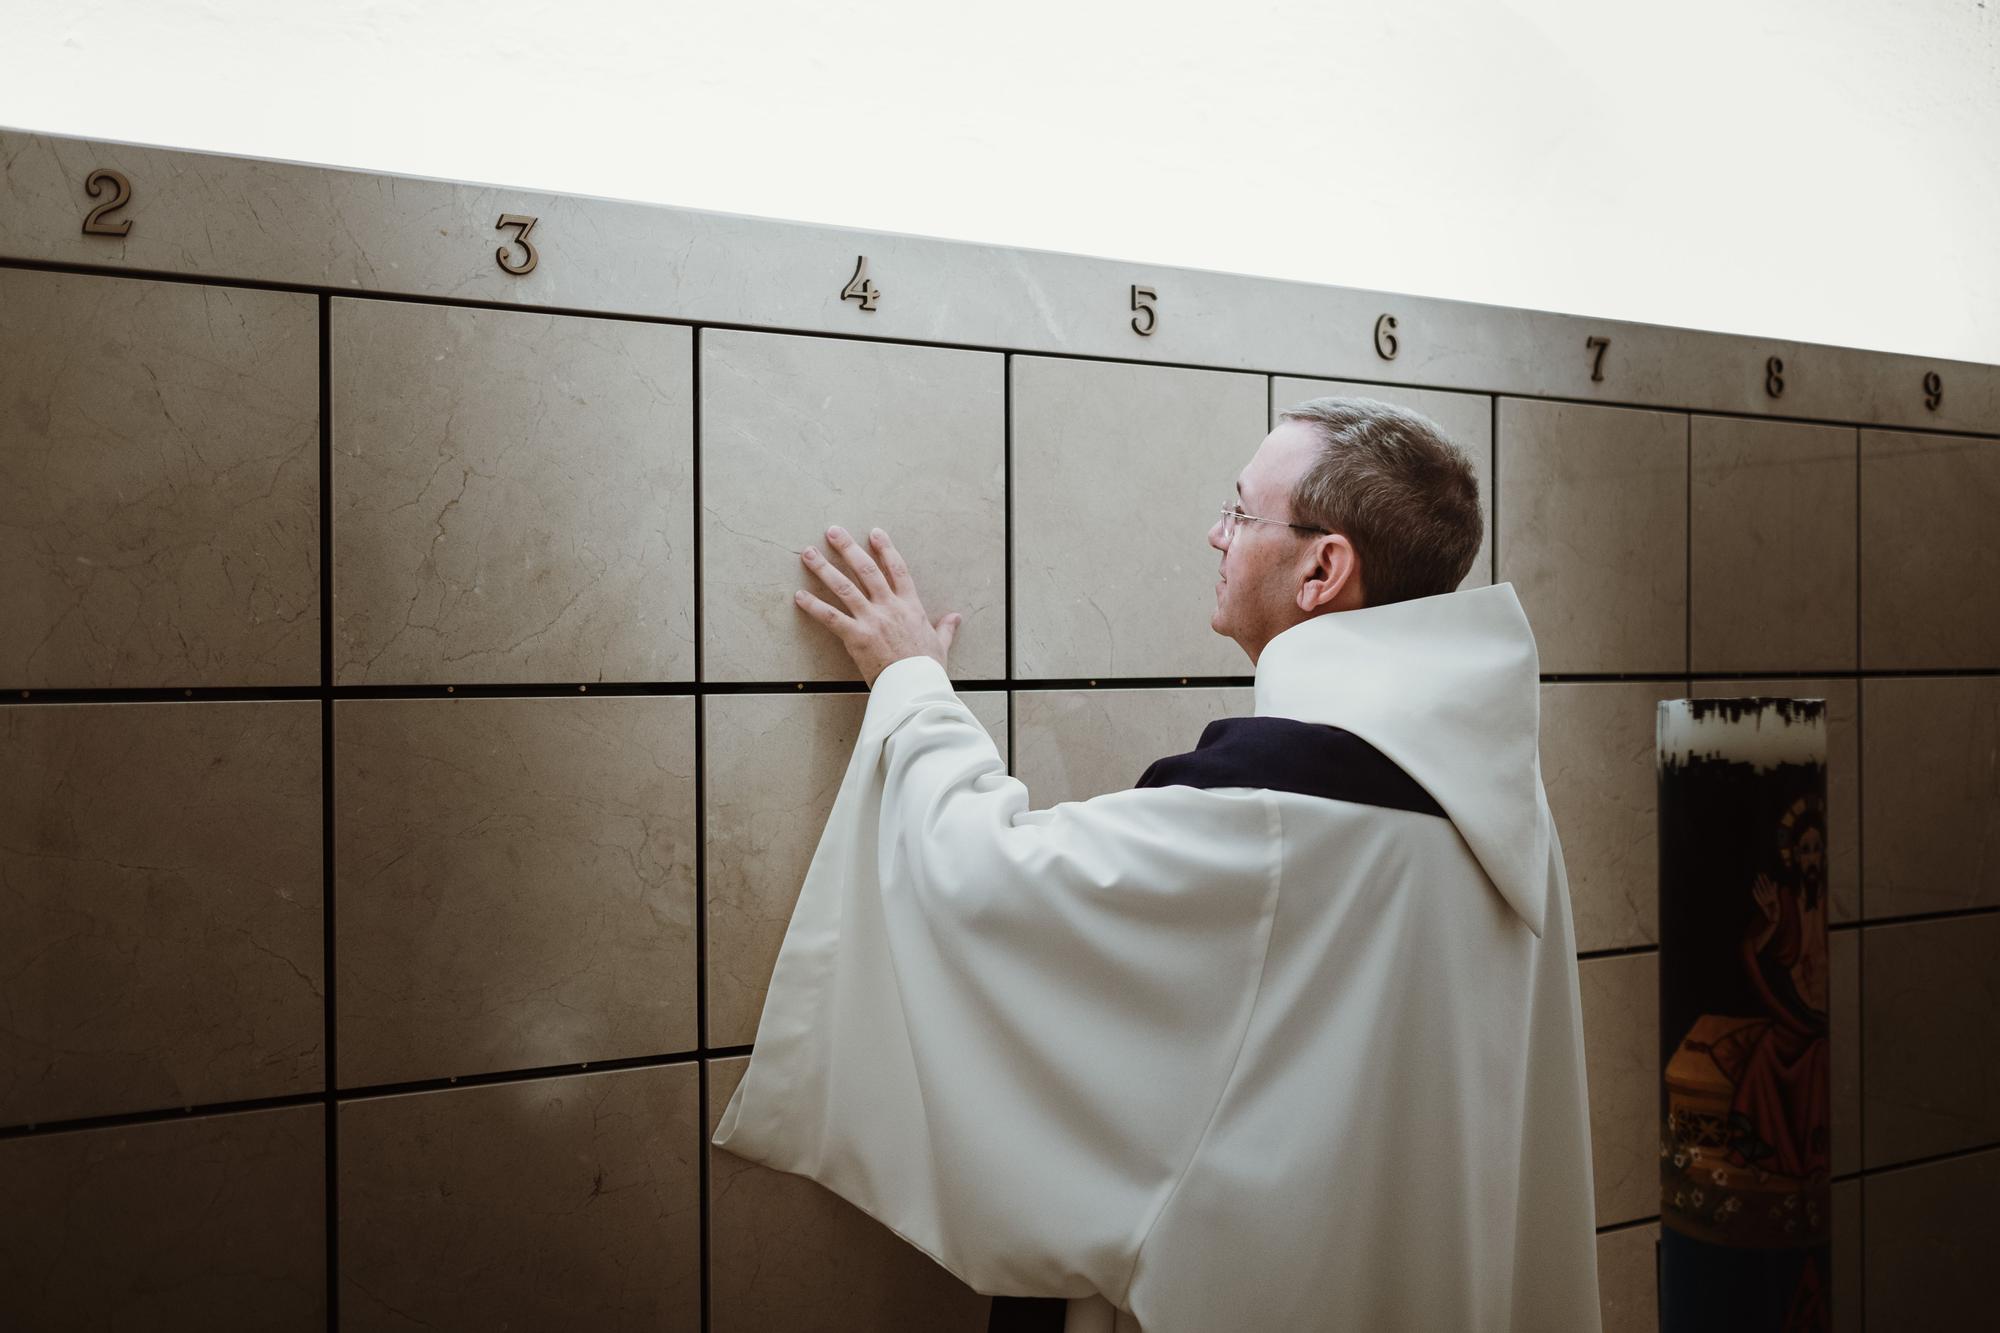 Descansar para siempre en la Seu: La Catedral estrena columbarios